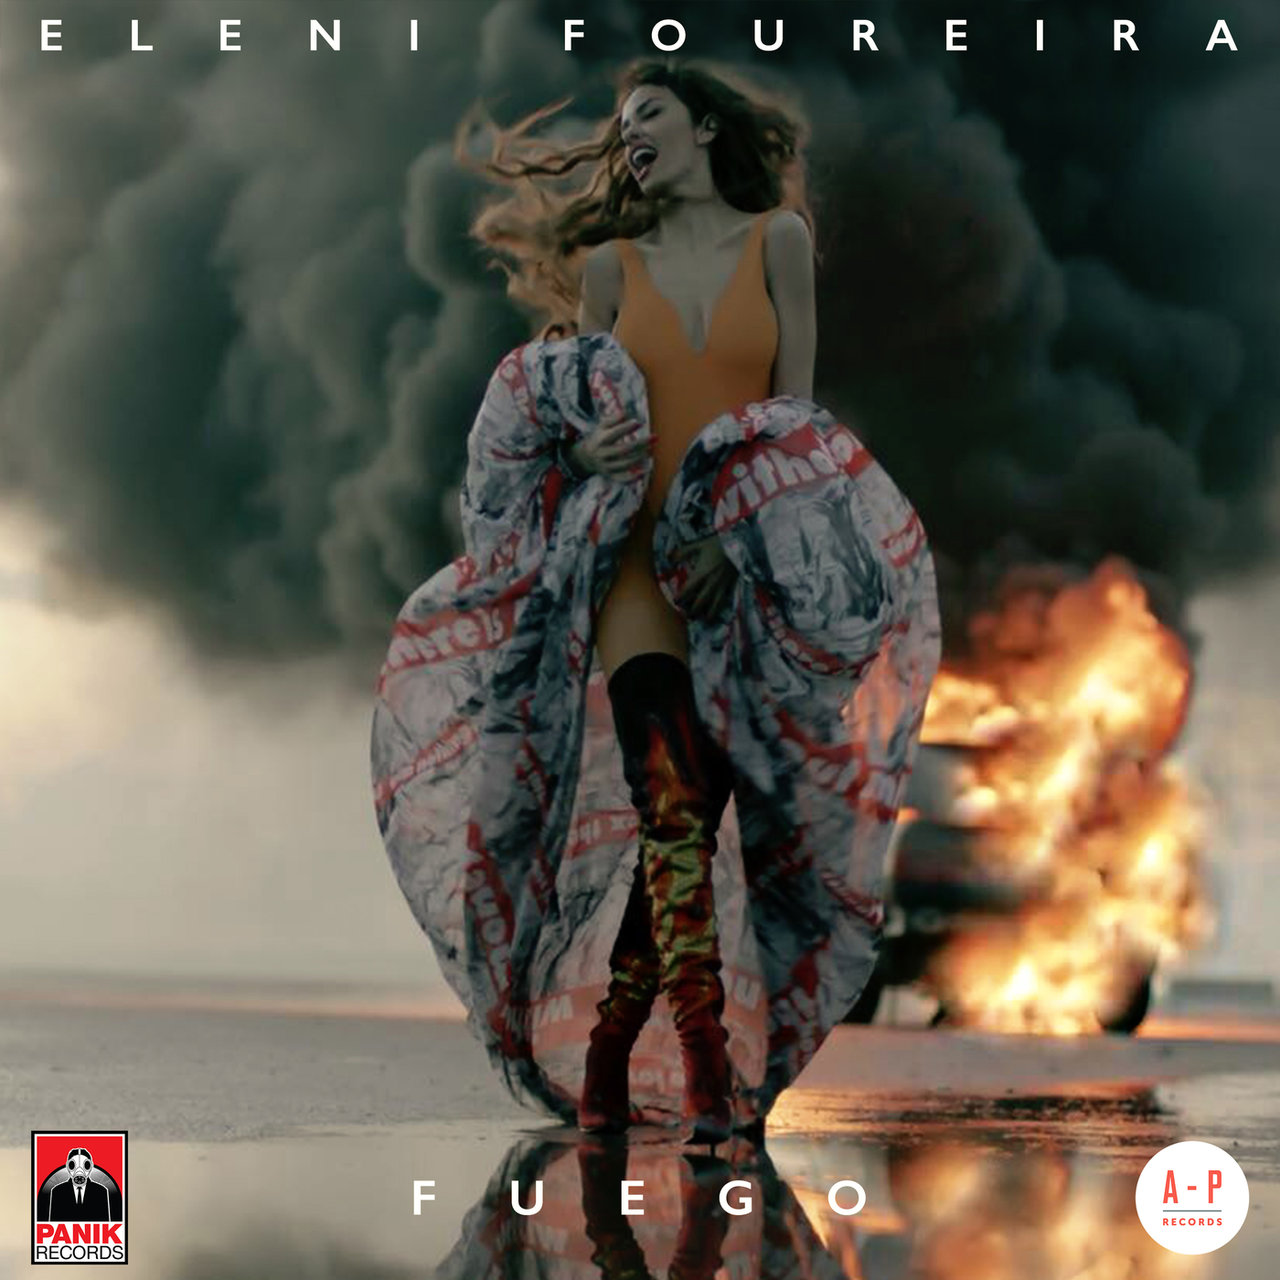 Eleni Foureira — Fuego cover artwork